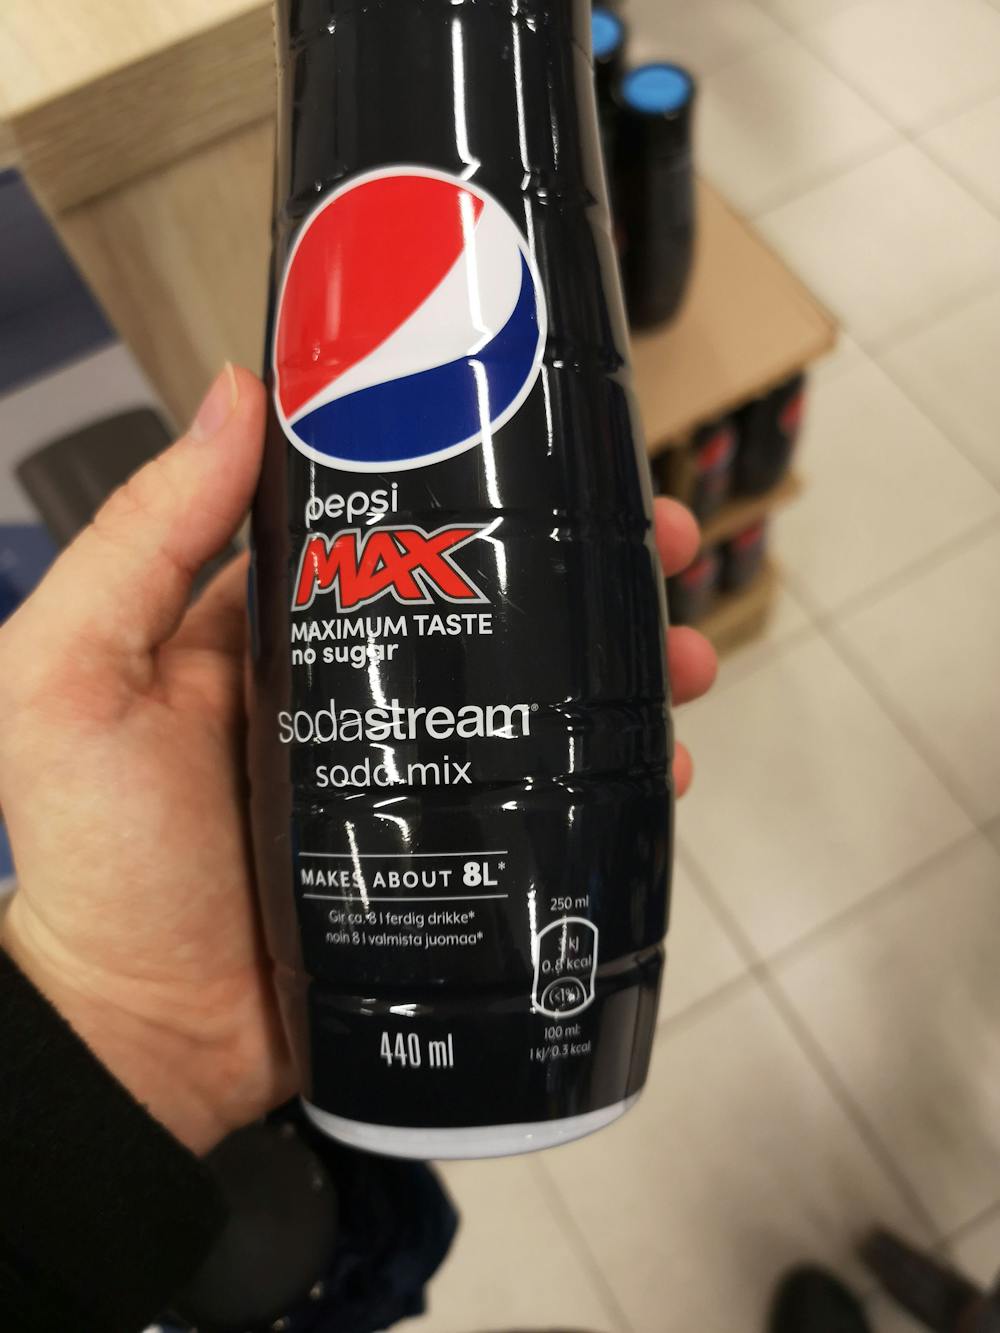 Pepsi max sodastream, Sodastream